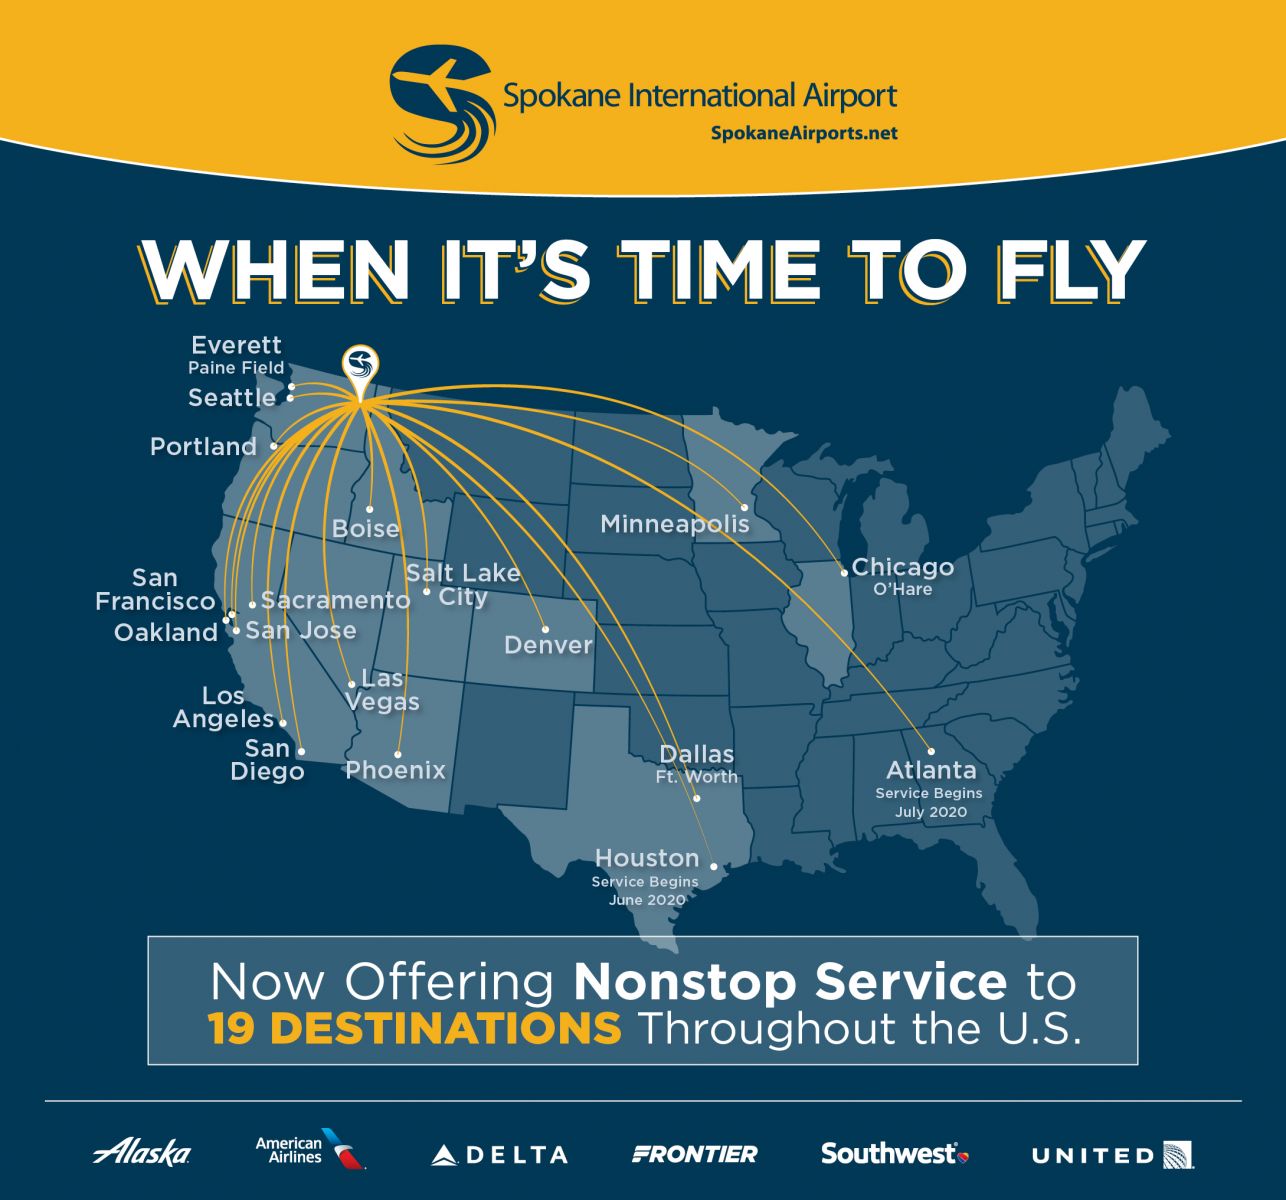 Spokane Intl Airport > Flight Info > Non-Stop Flights